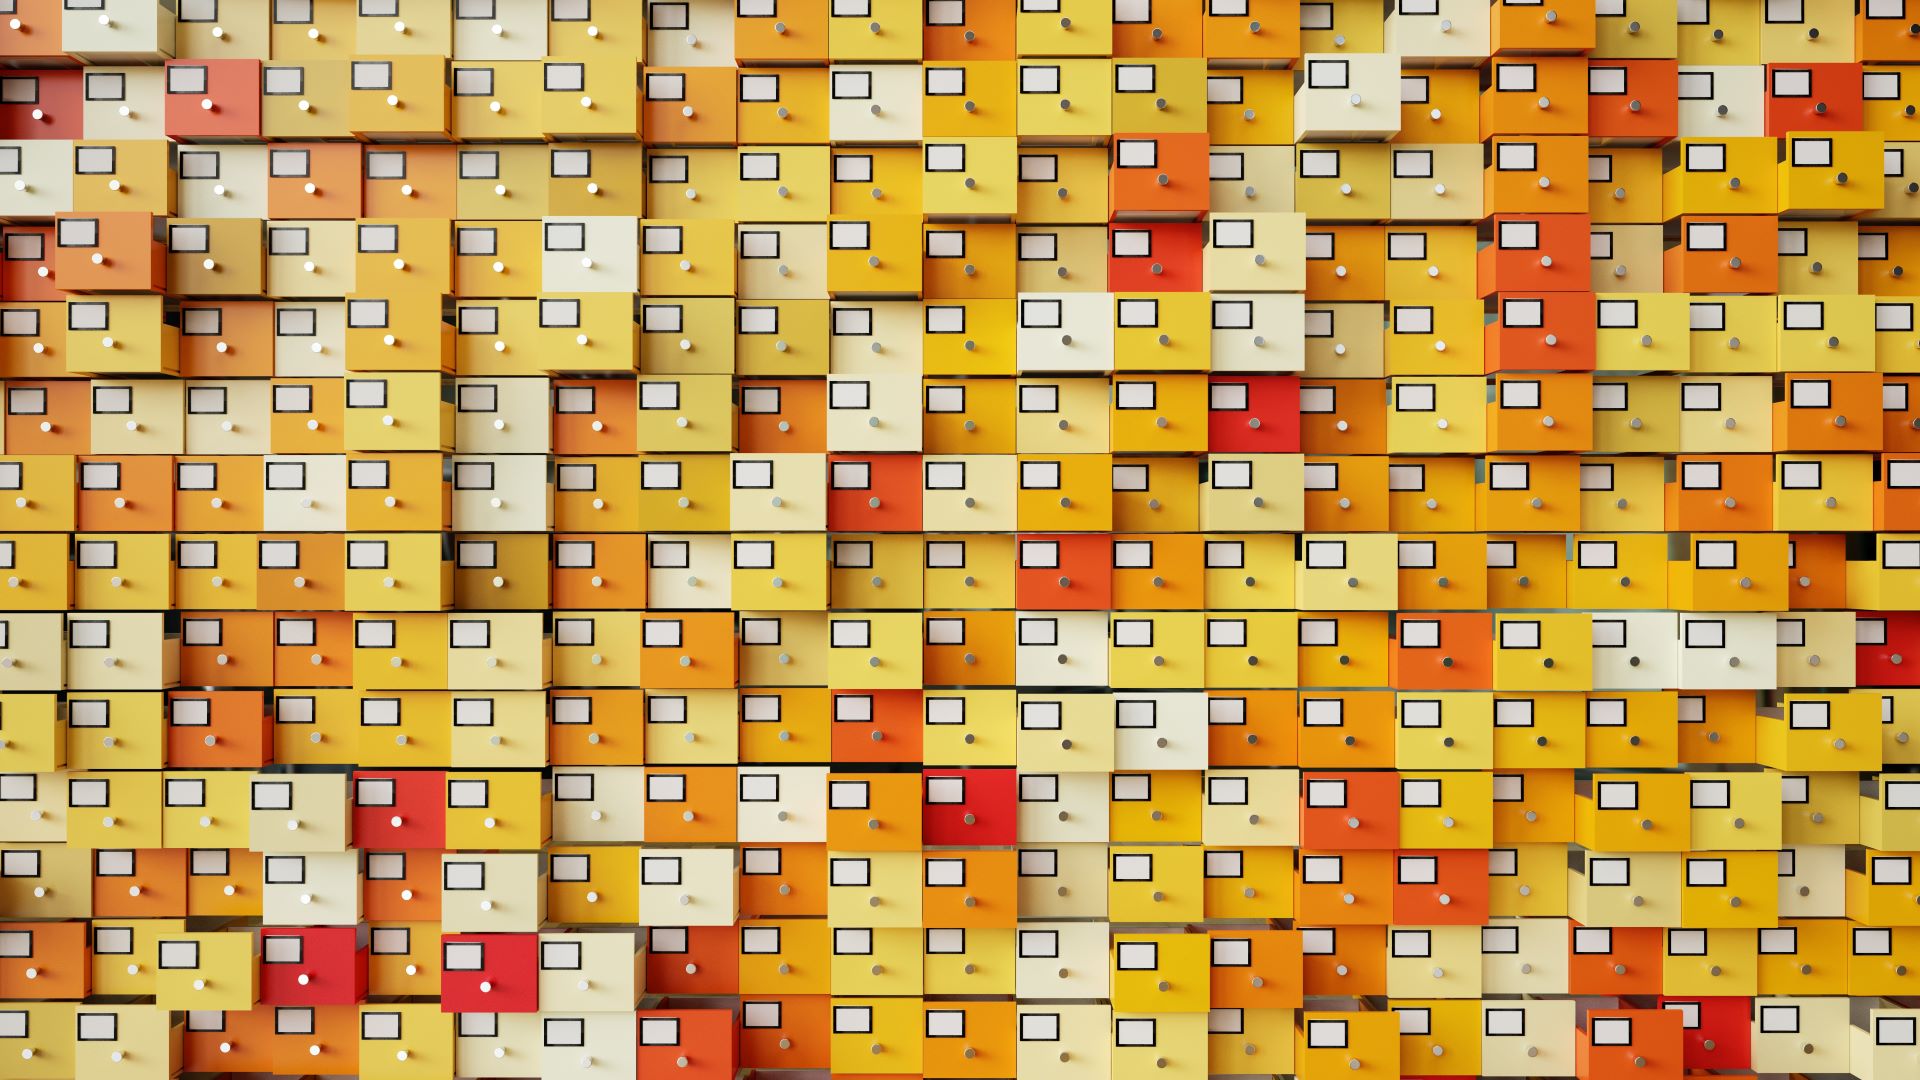 centenas de gavetas de arquivo a amarelo, laranja e vermelho, cada uma com uma etiqueta em branco